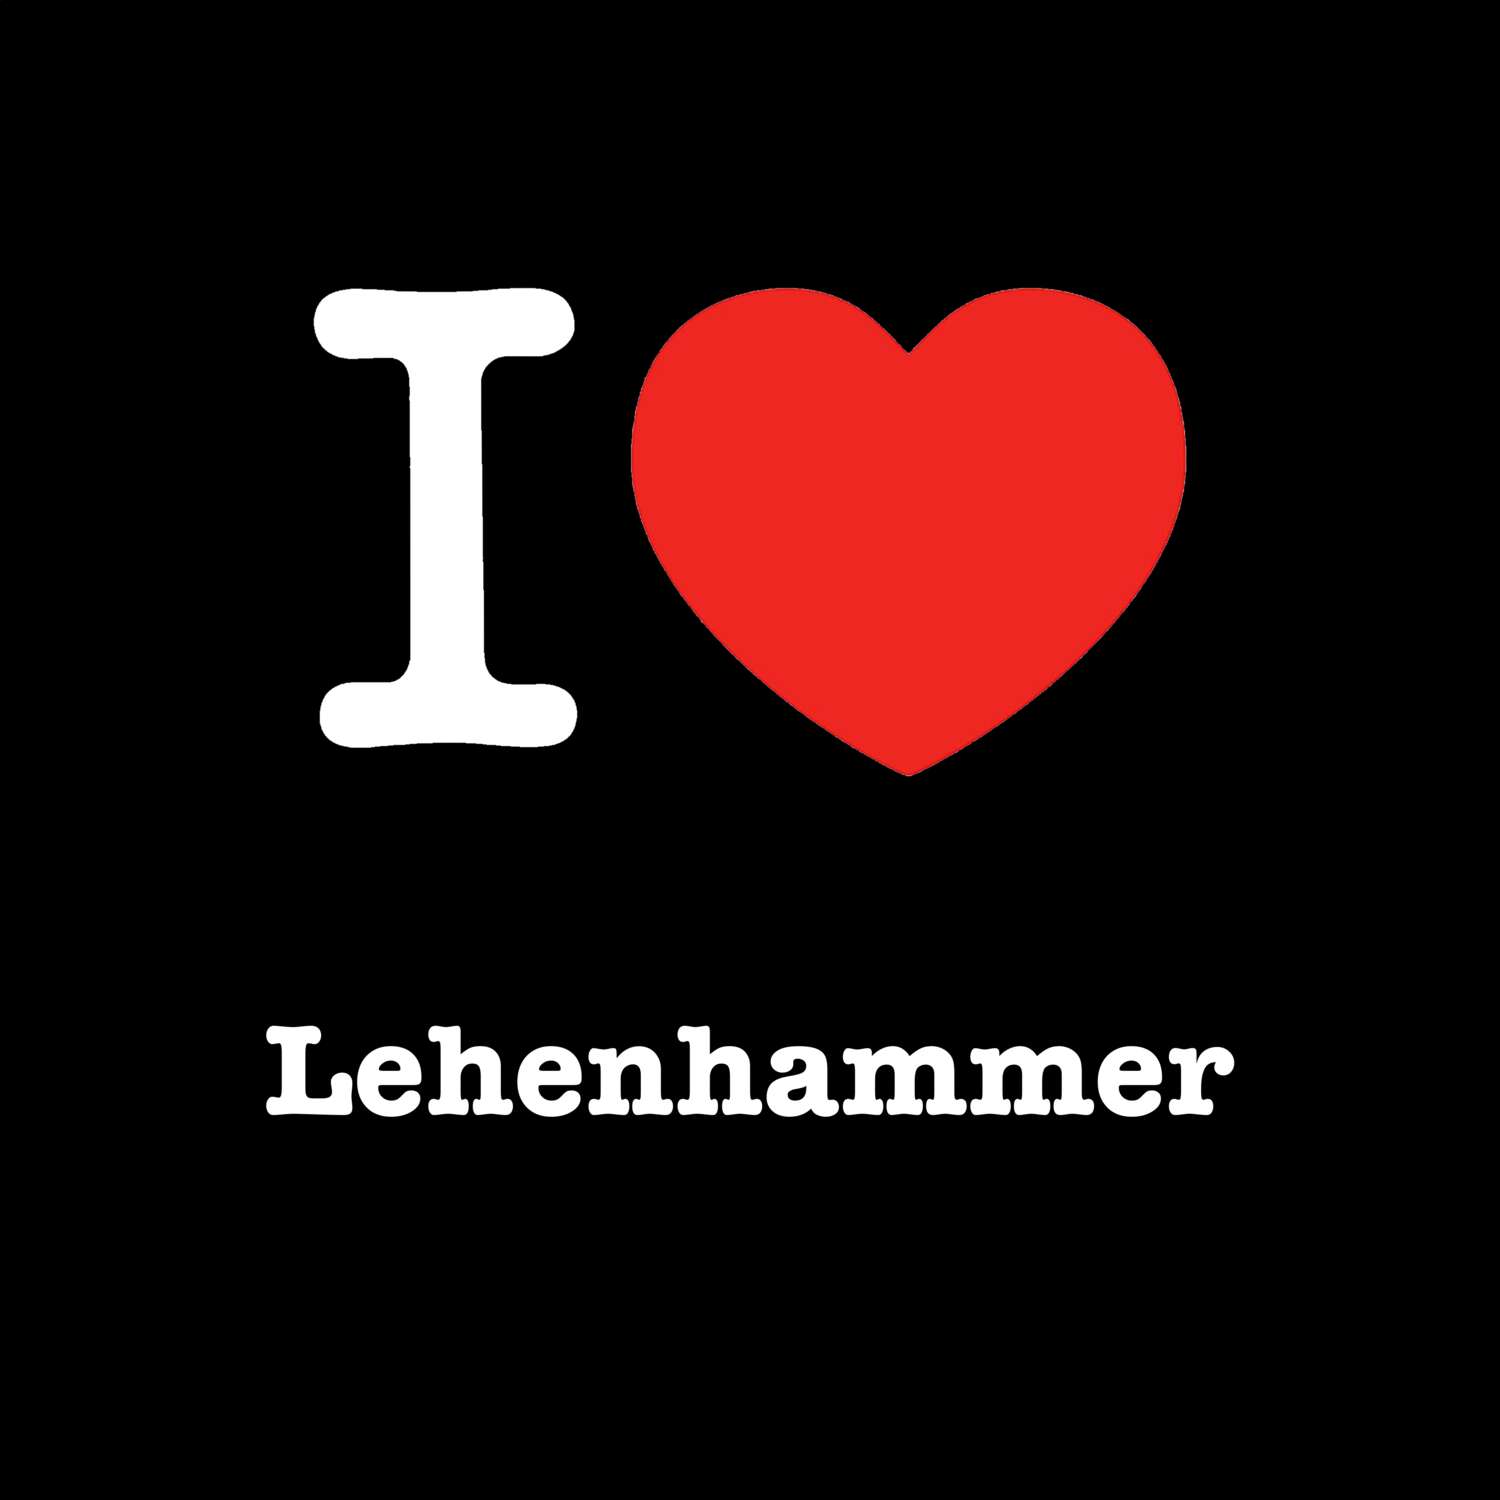 Lehenhammer T-Shirt »I love«